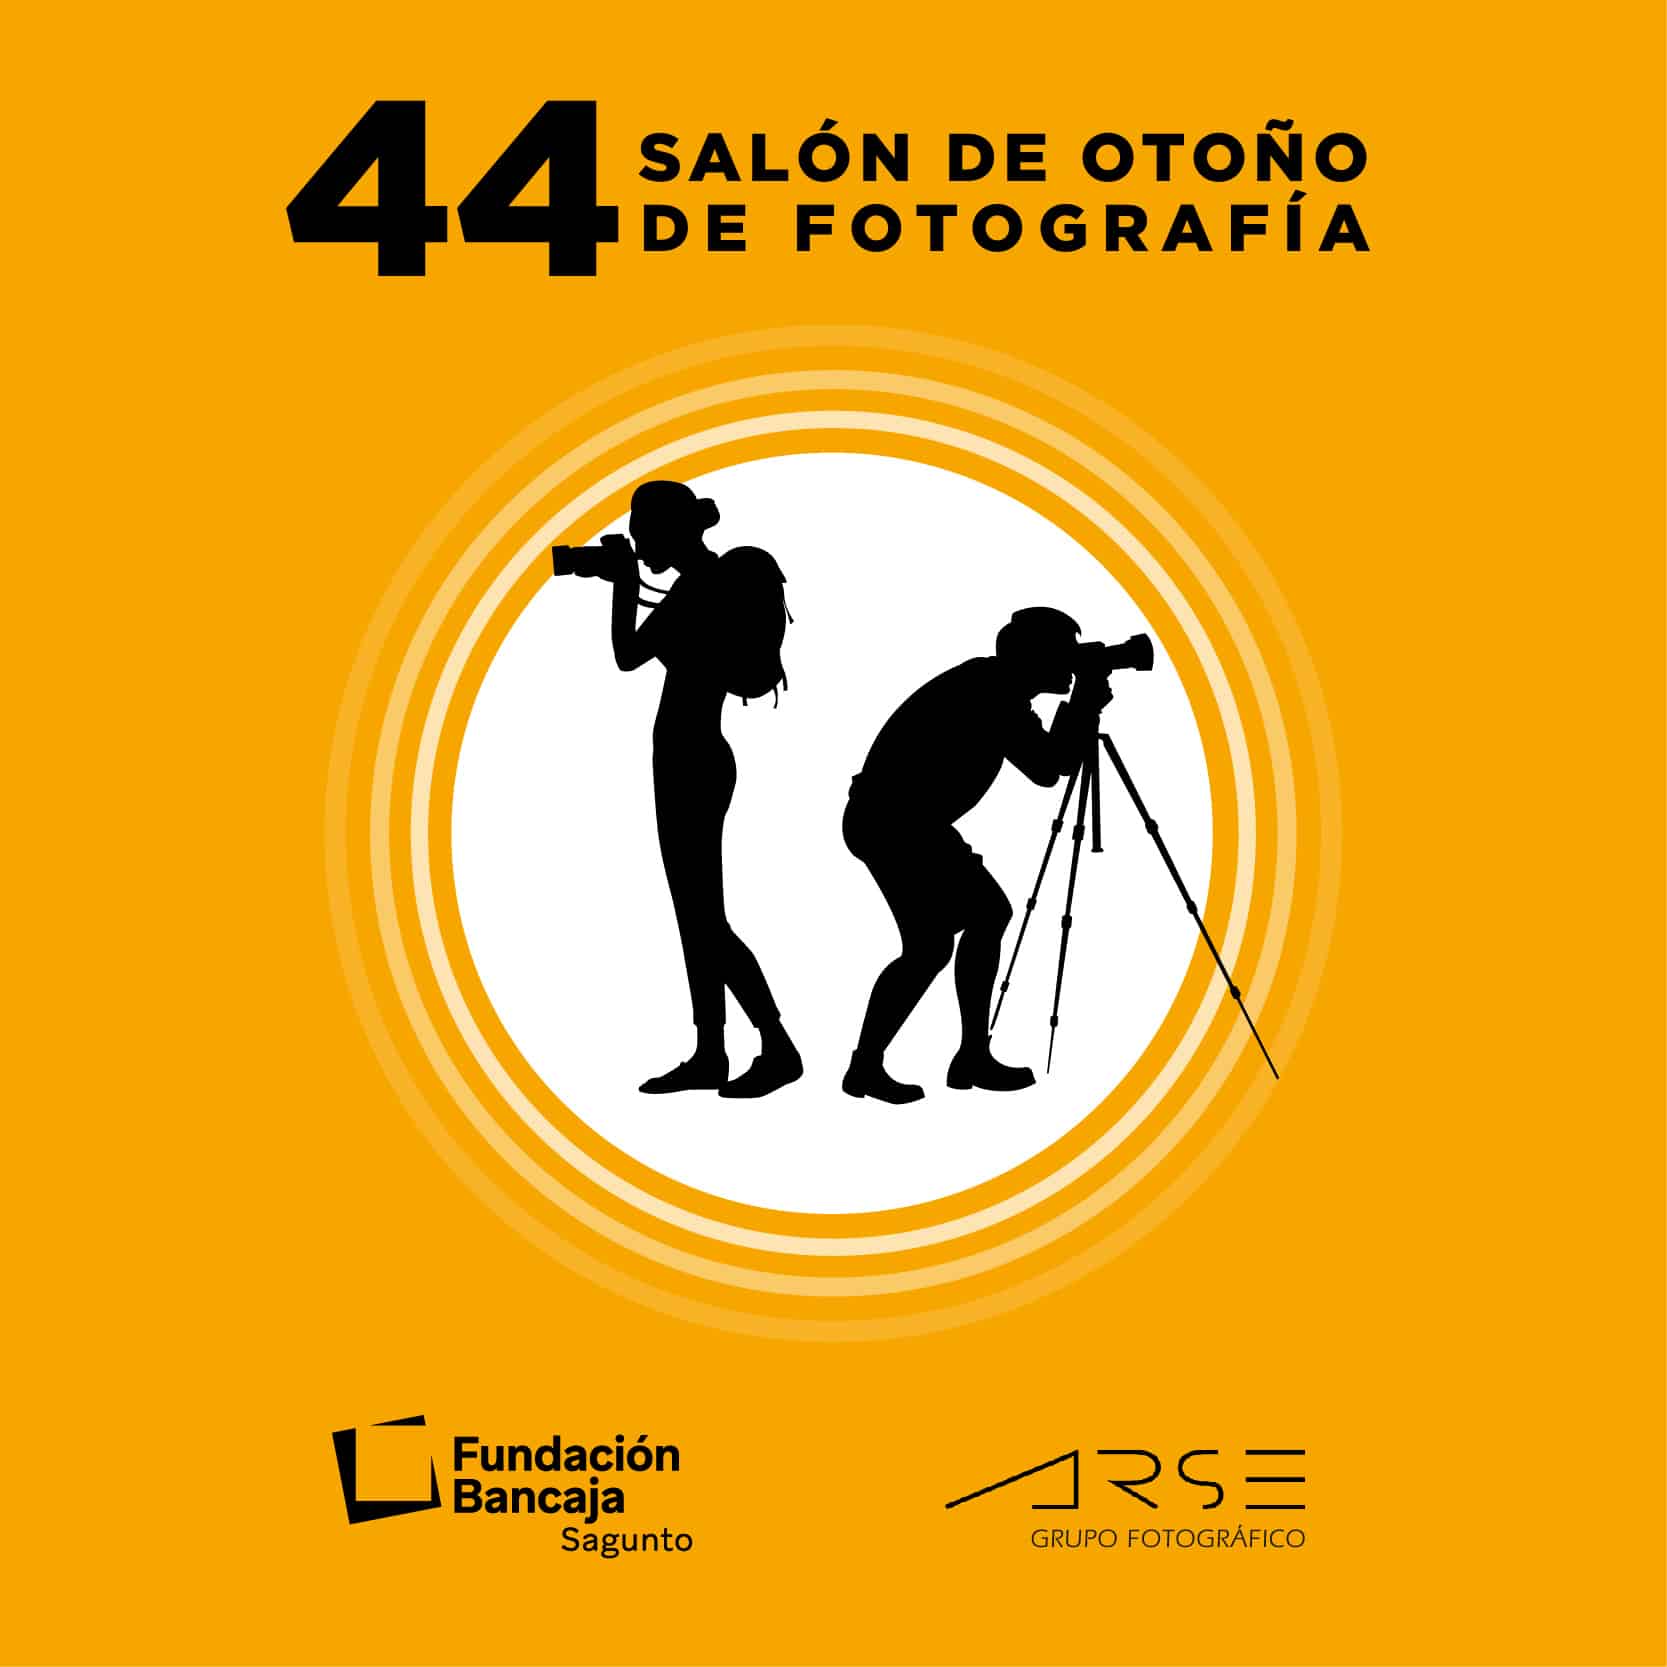 44 Salón de otoño de fotografía